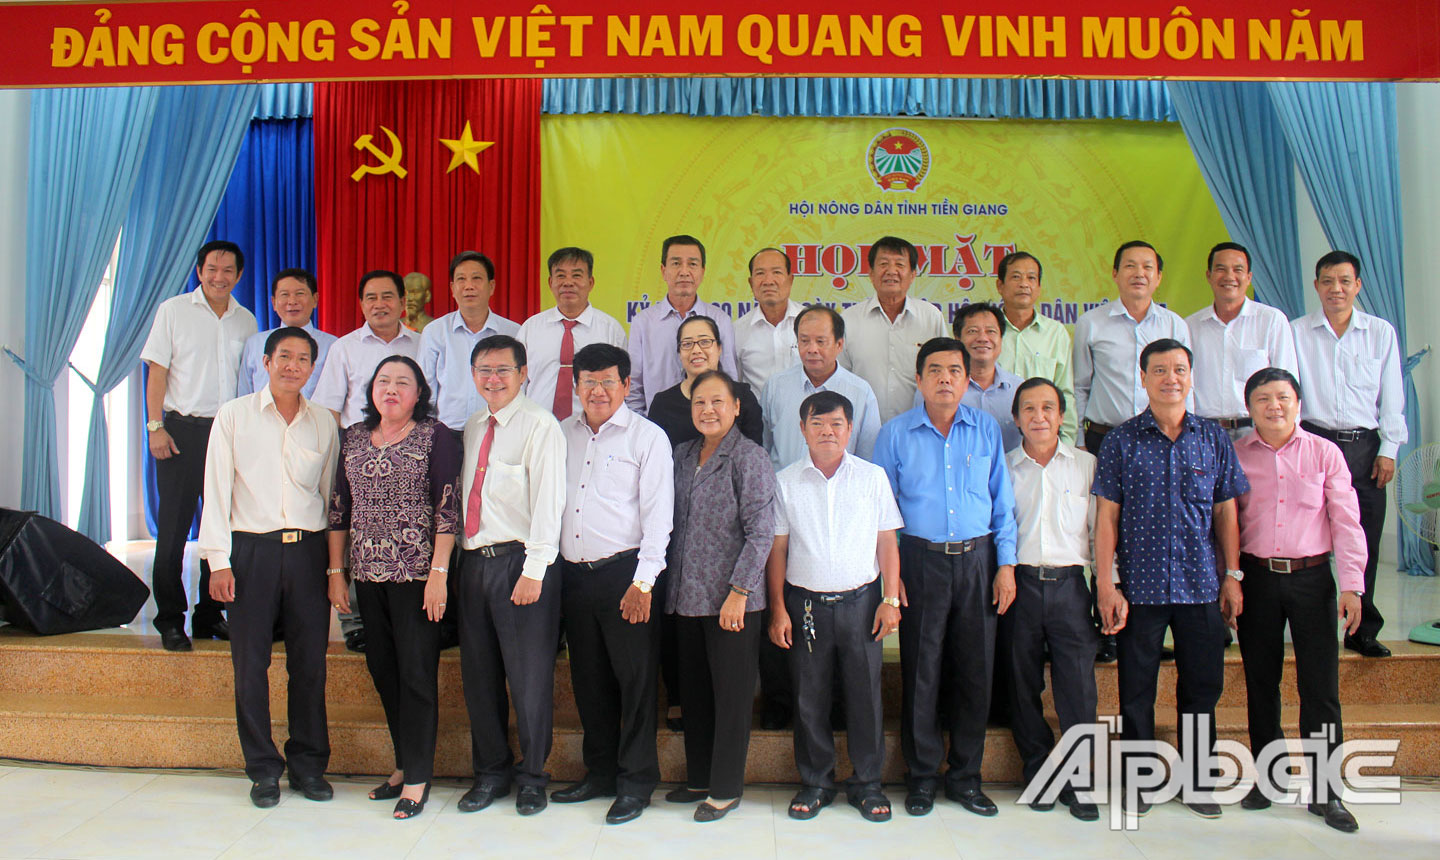 Hội Nông dân tỉnh Tiền Giang tổ chức Họp mặt nhân kỷ niệm 90 năm Ngày thành lập Hội Nông dân Việt Nam (14-10-1930 - 14-10-2020).